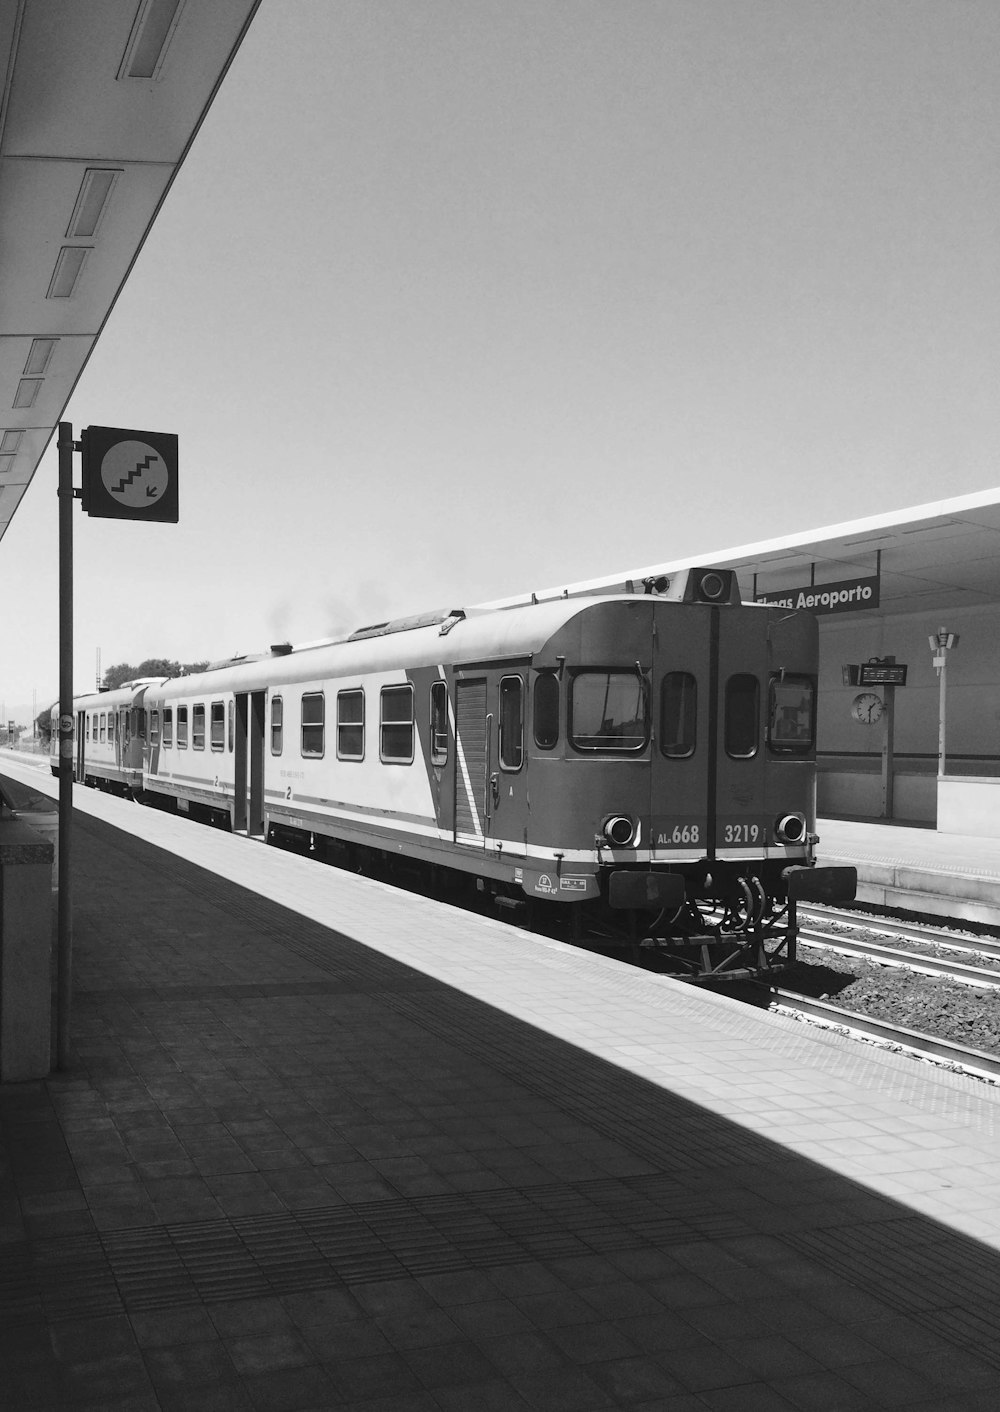 fotografia in scala di grigi del treno in stazione